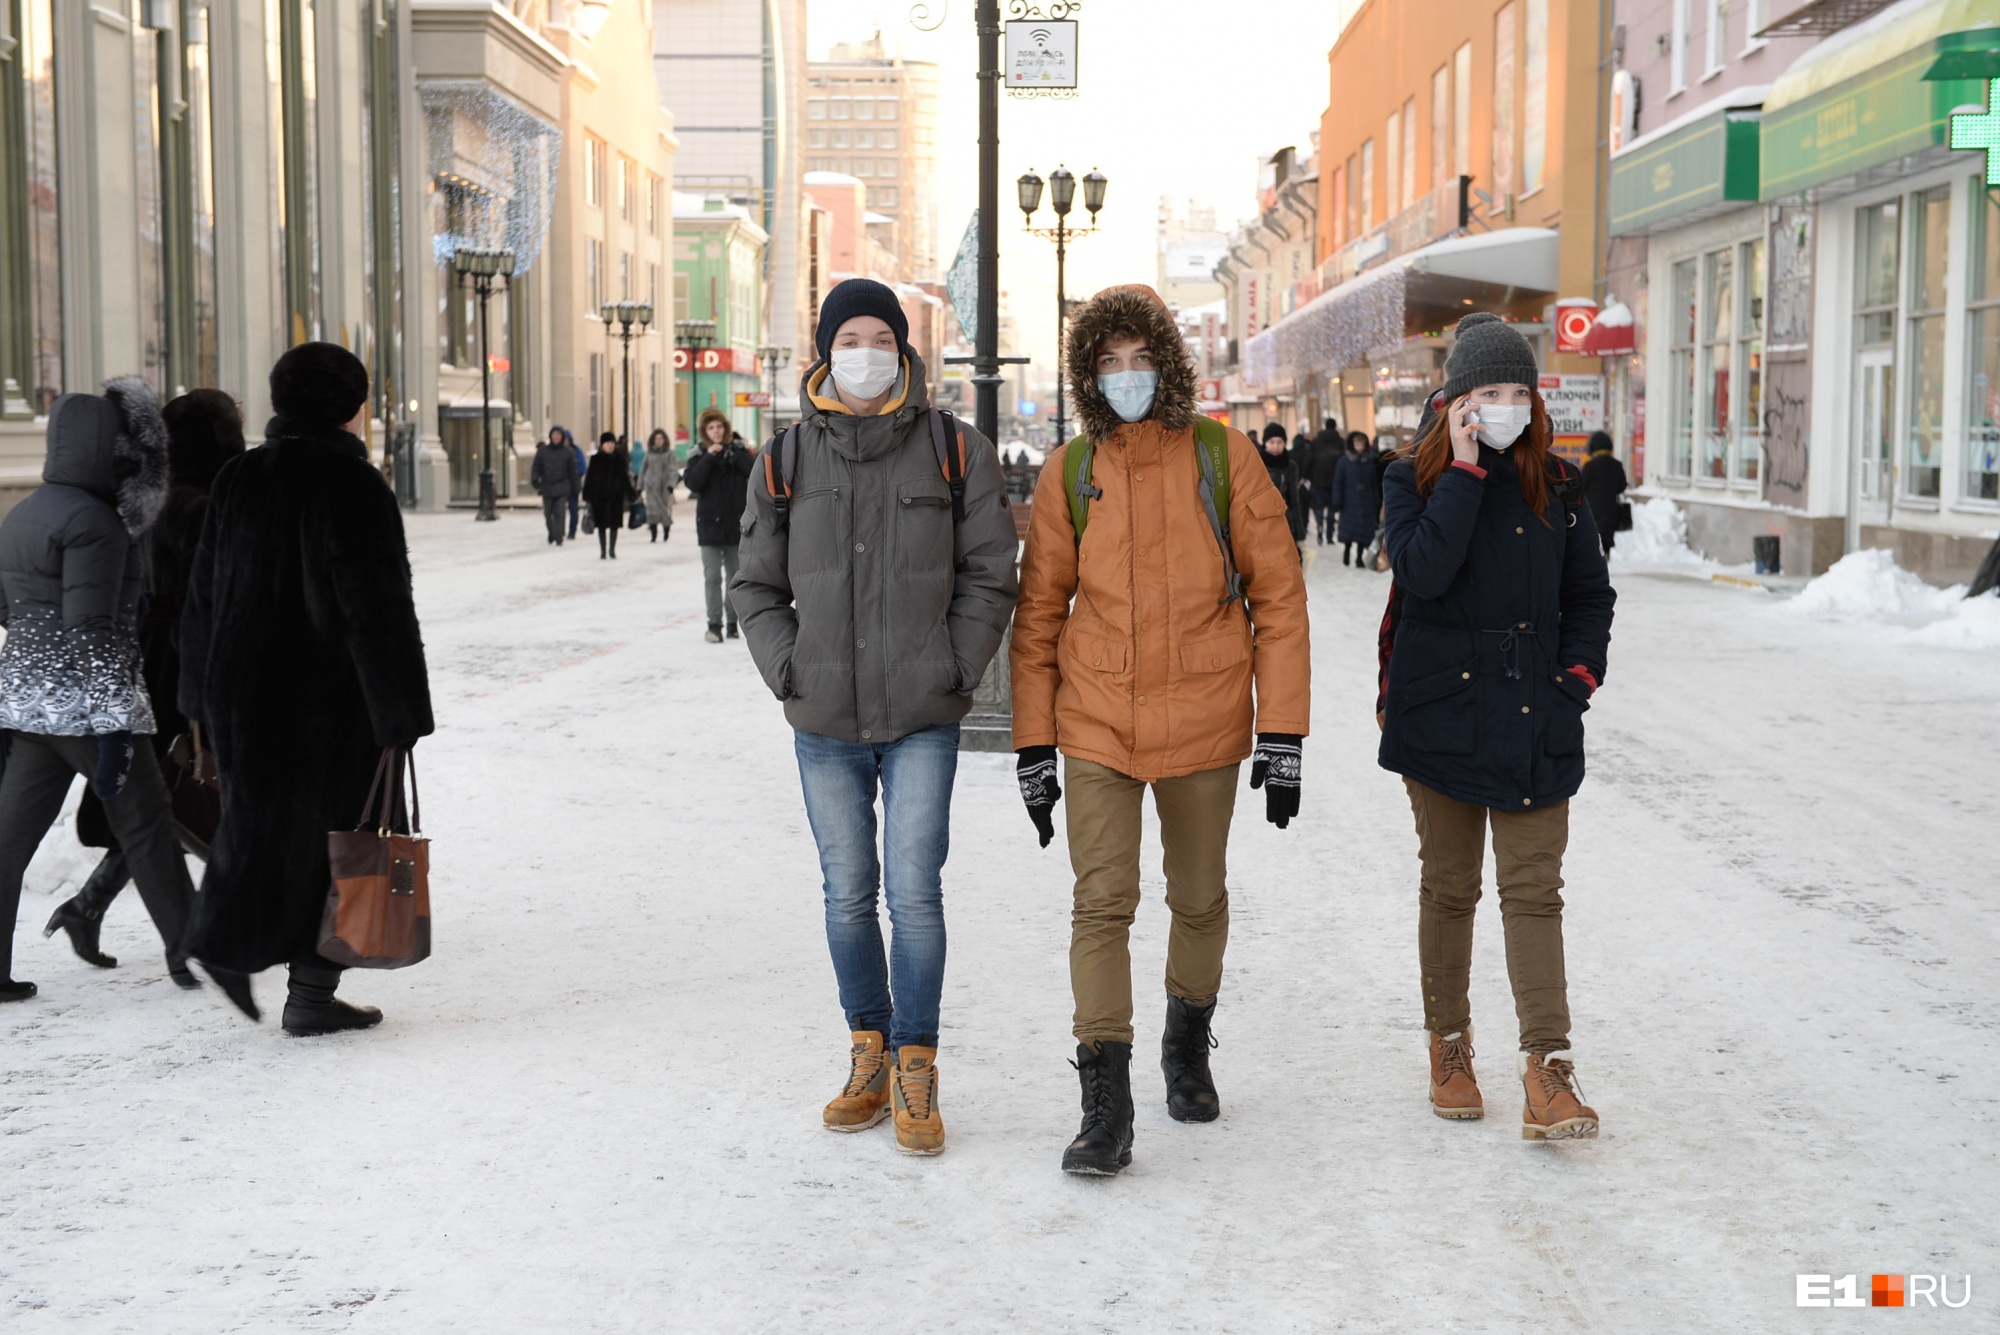 Когда жителям Свердловской области разрешат снять маски? Отвечает полпред